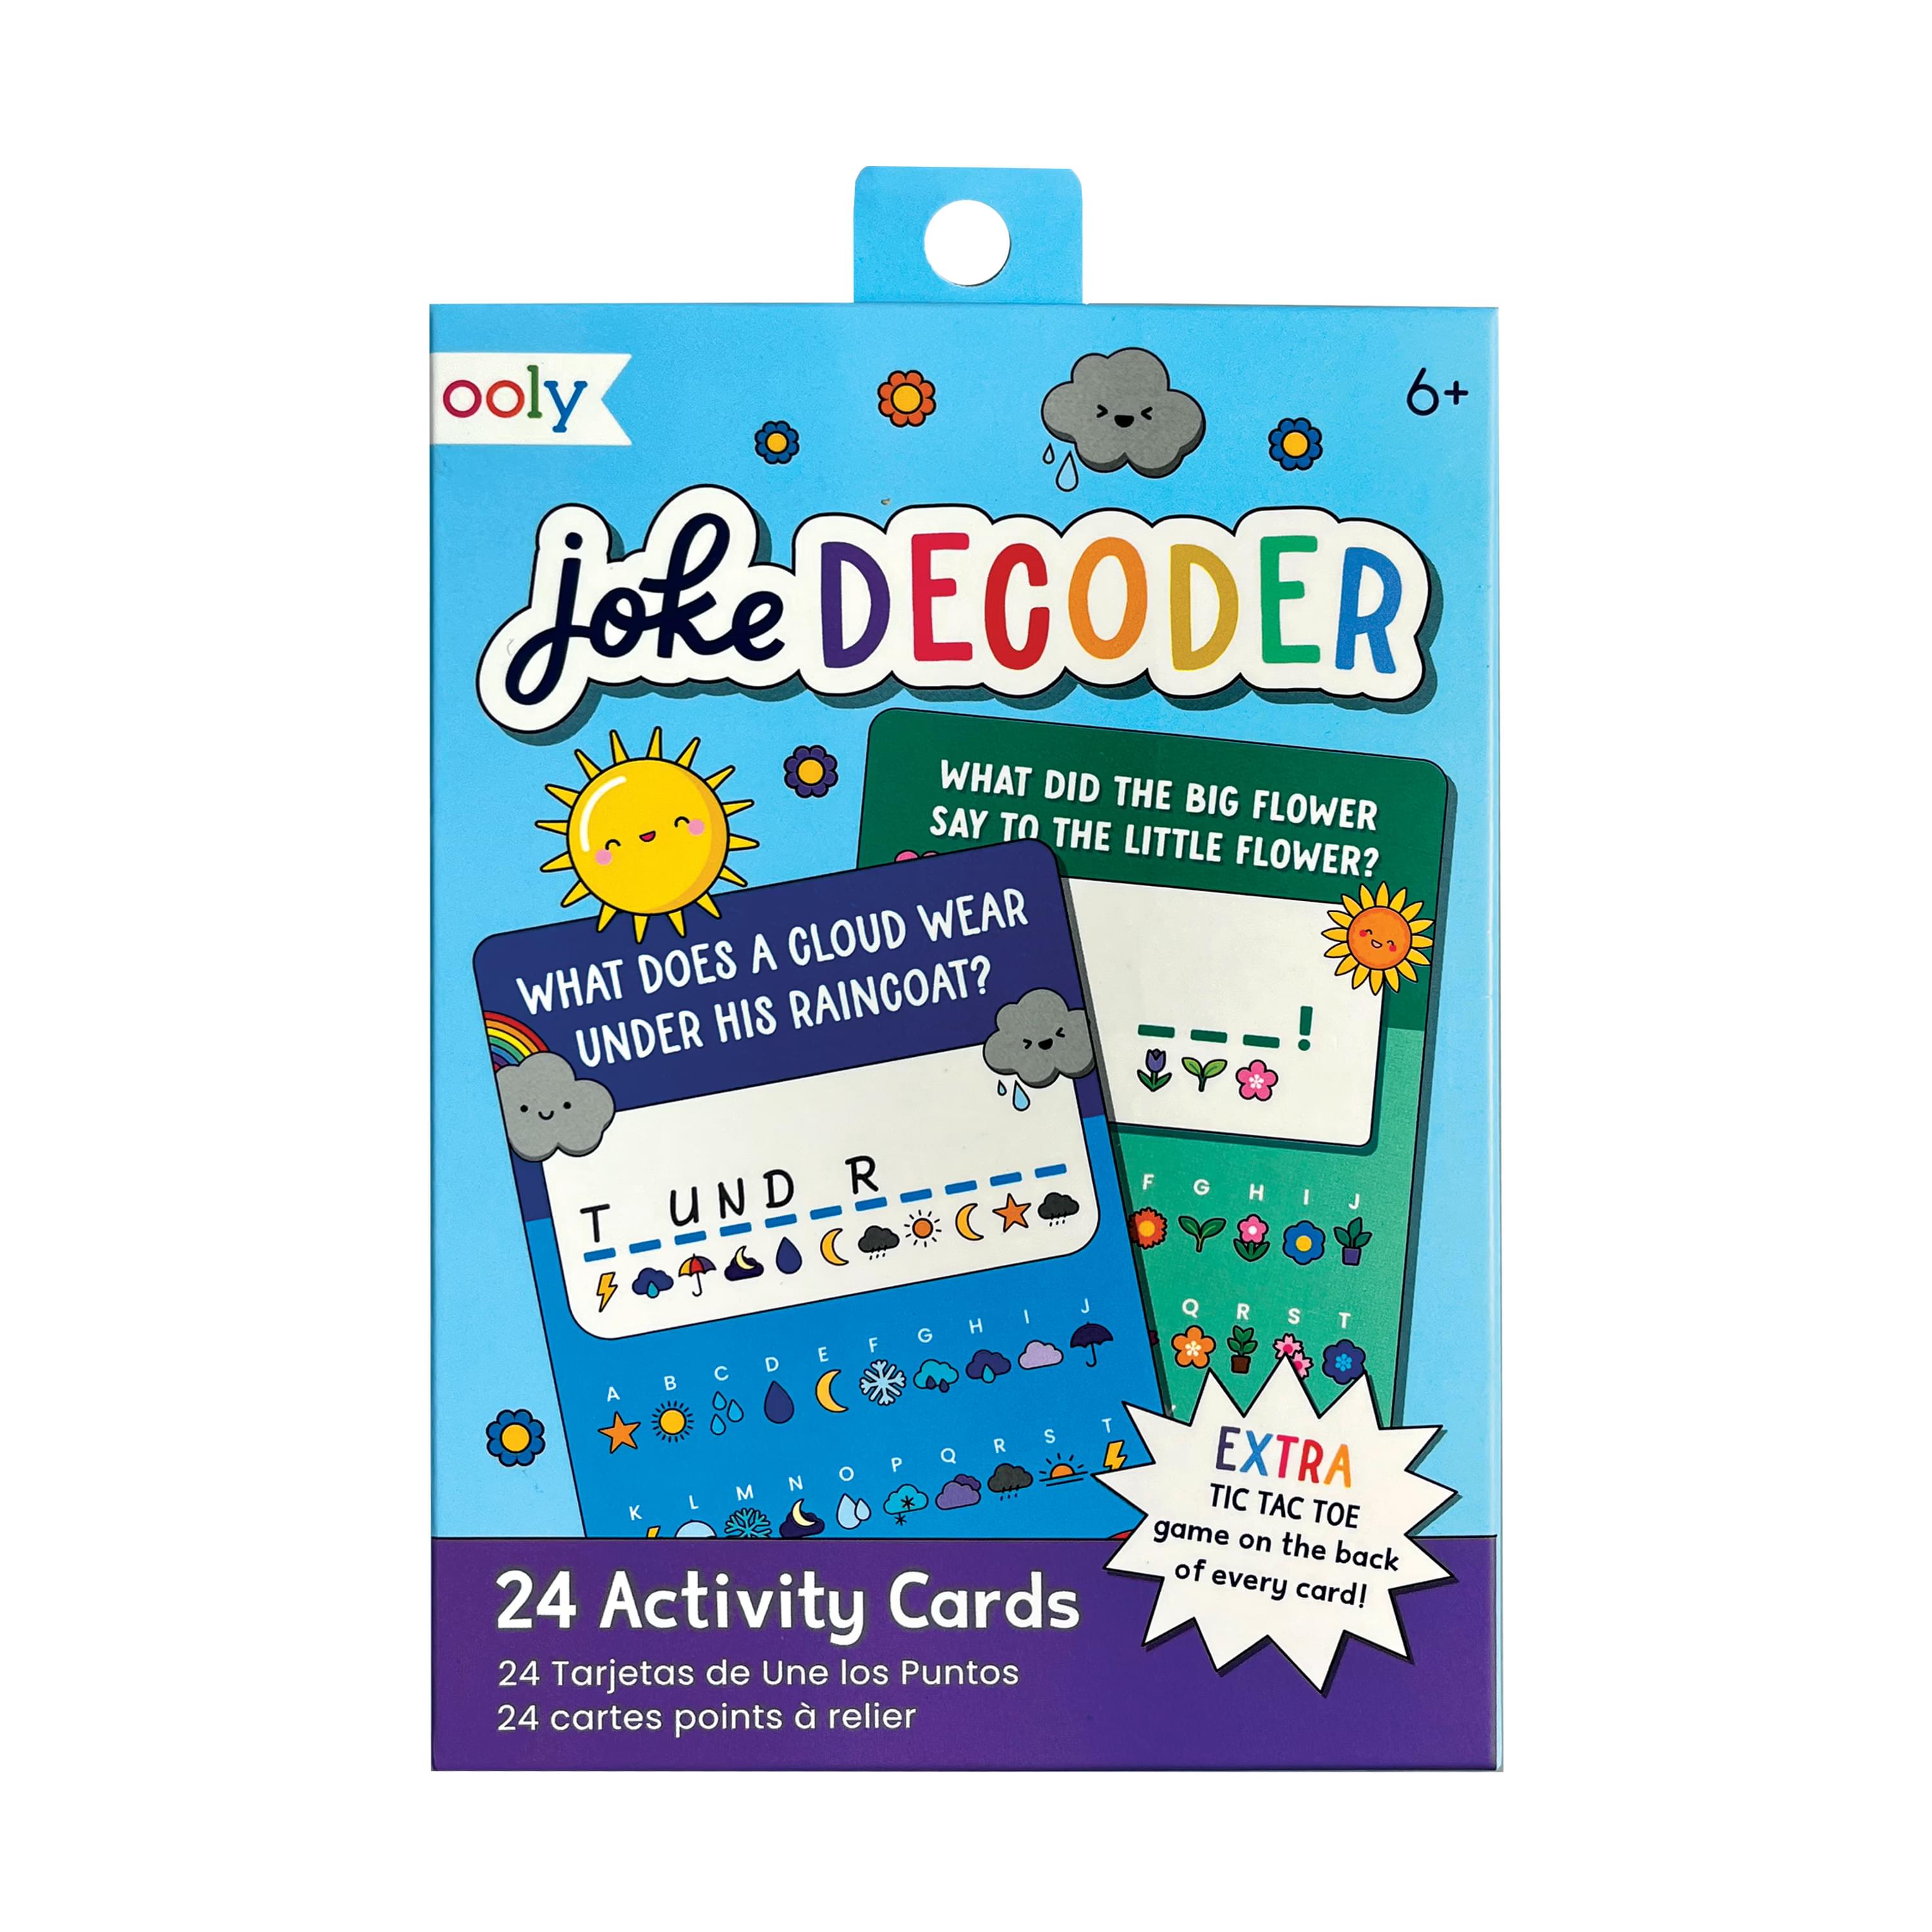 Ooly Entzückende Geheimnisse: Ooly Joke Decoder-Aktivitätskarten für endlosen Lachspaß! 🌟💕